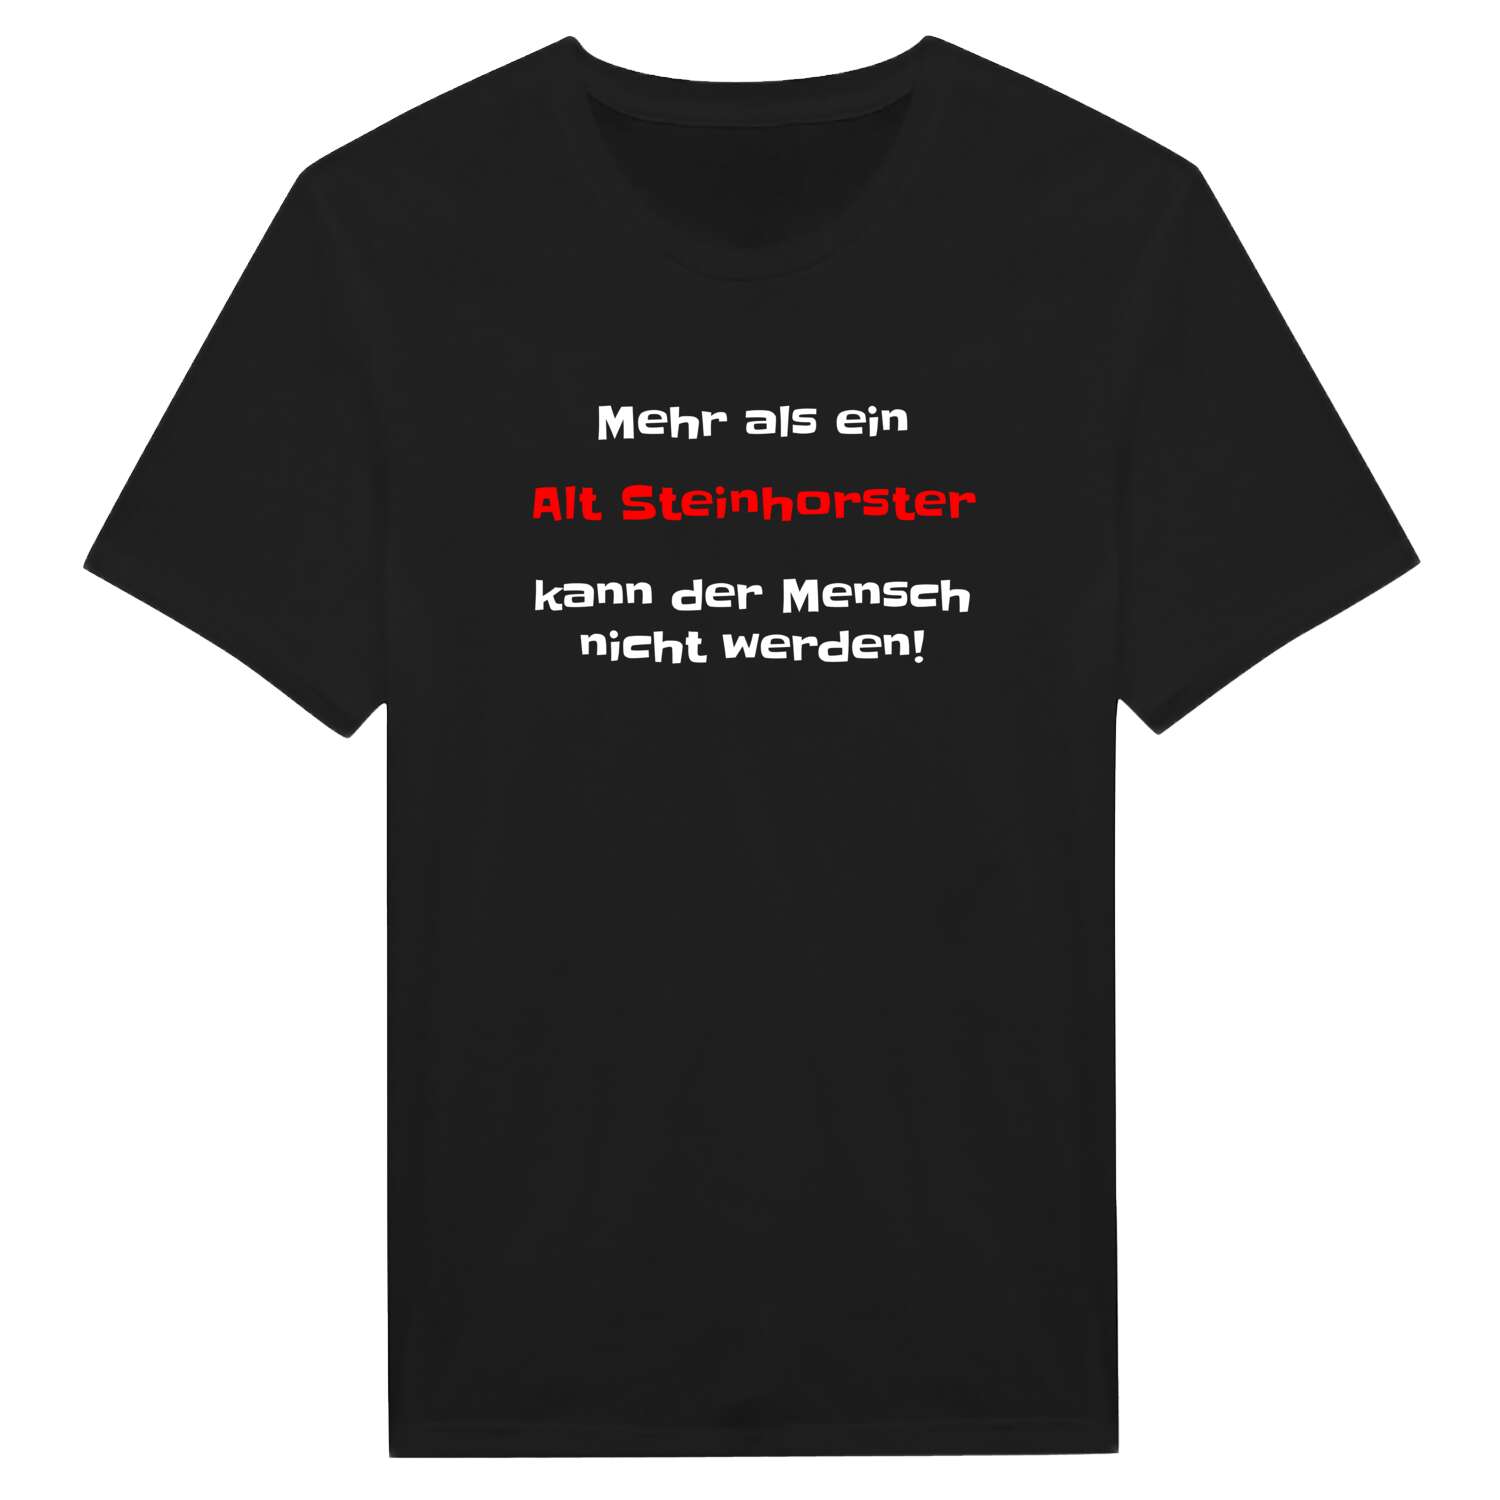 Alt Steinhorst T-Shirt »Mehr als ein«